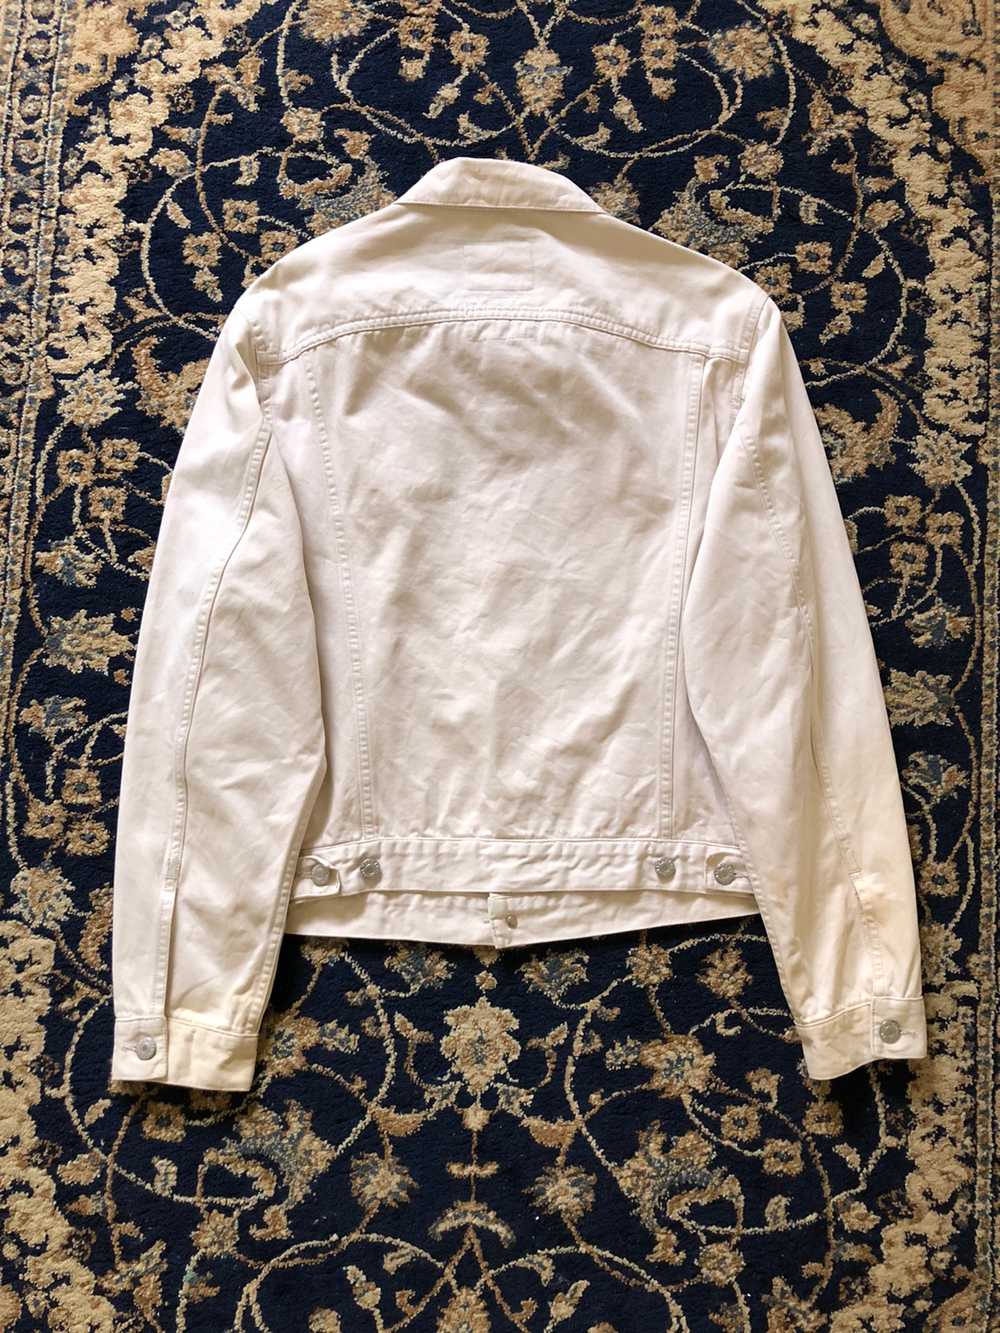 1998 Helmut Lang Off-white Vintage Cotton Jacket - image 7